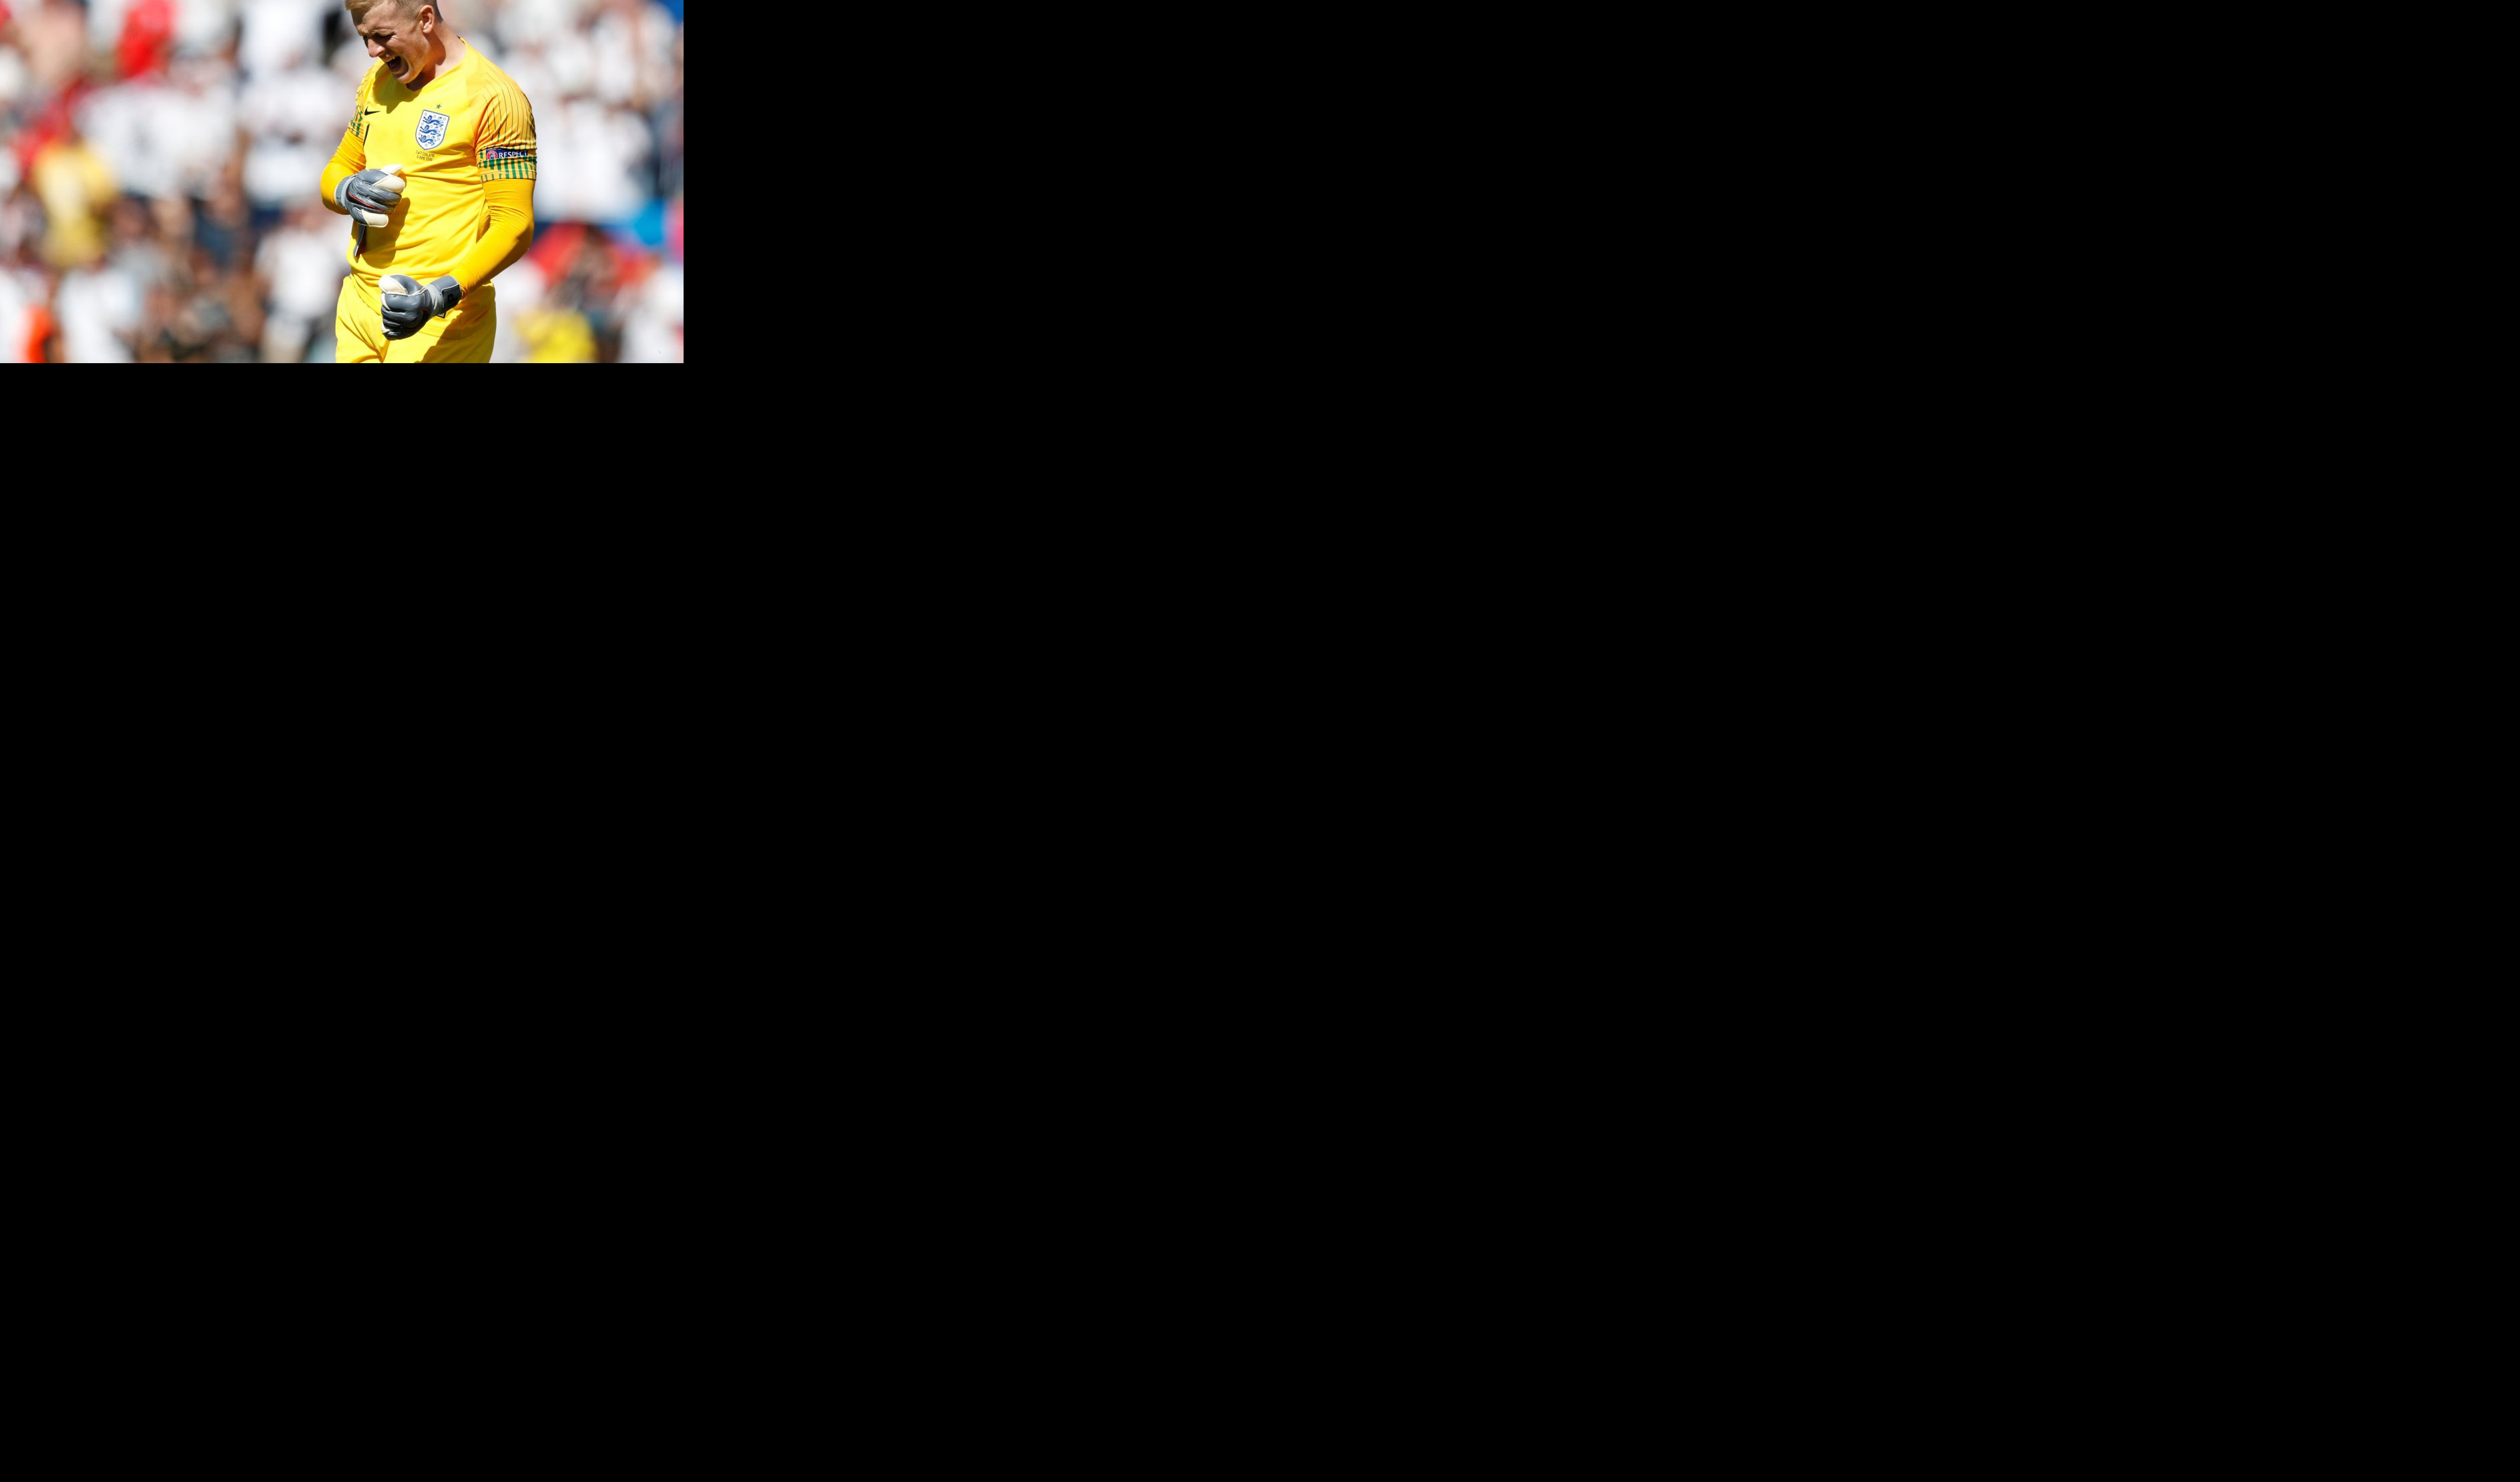 (VIDEO) PIKFORD JUNAK ENGLESKE! Golman prvo dao gol u petoj seriji, a onda odbranio penal Drmiću za treće mesto "Gordog albiona" u Ligi nacija!